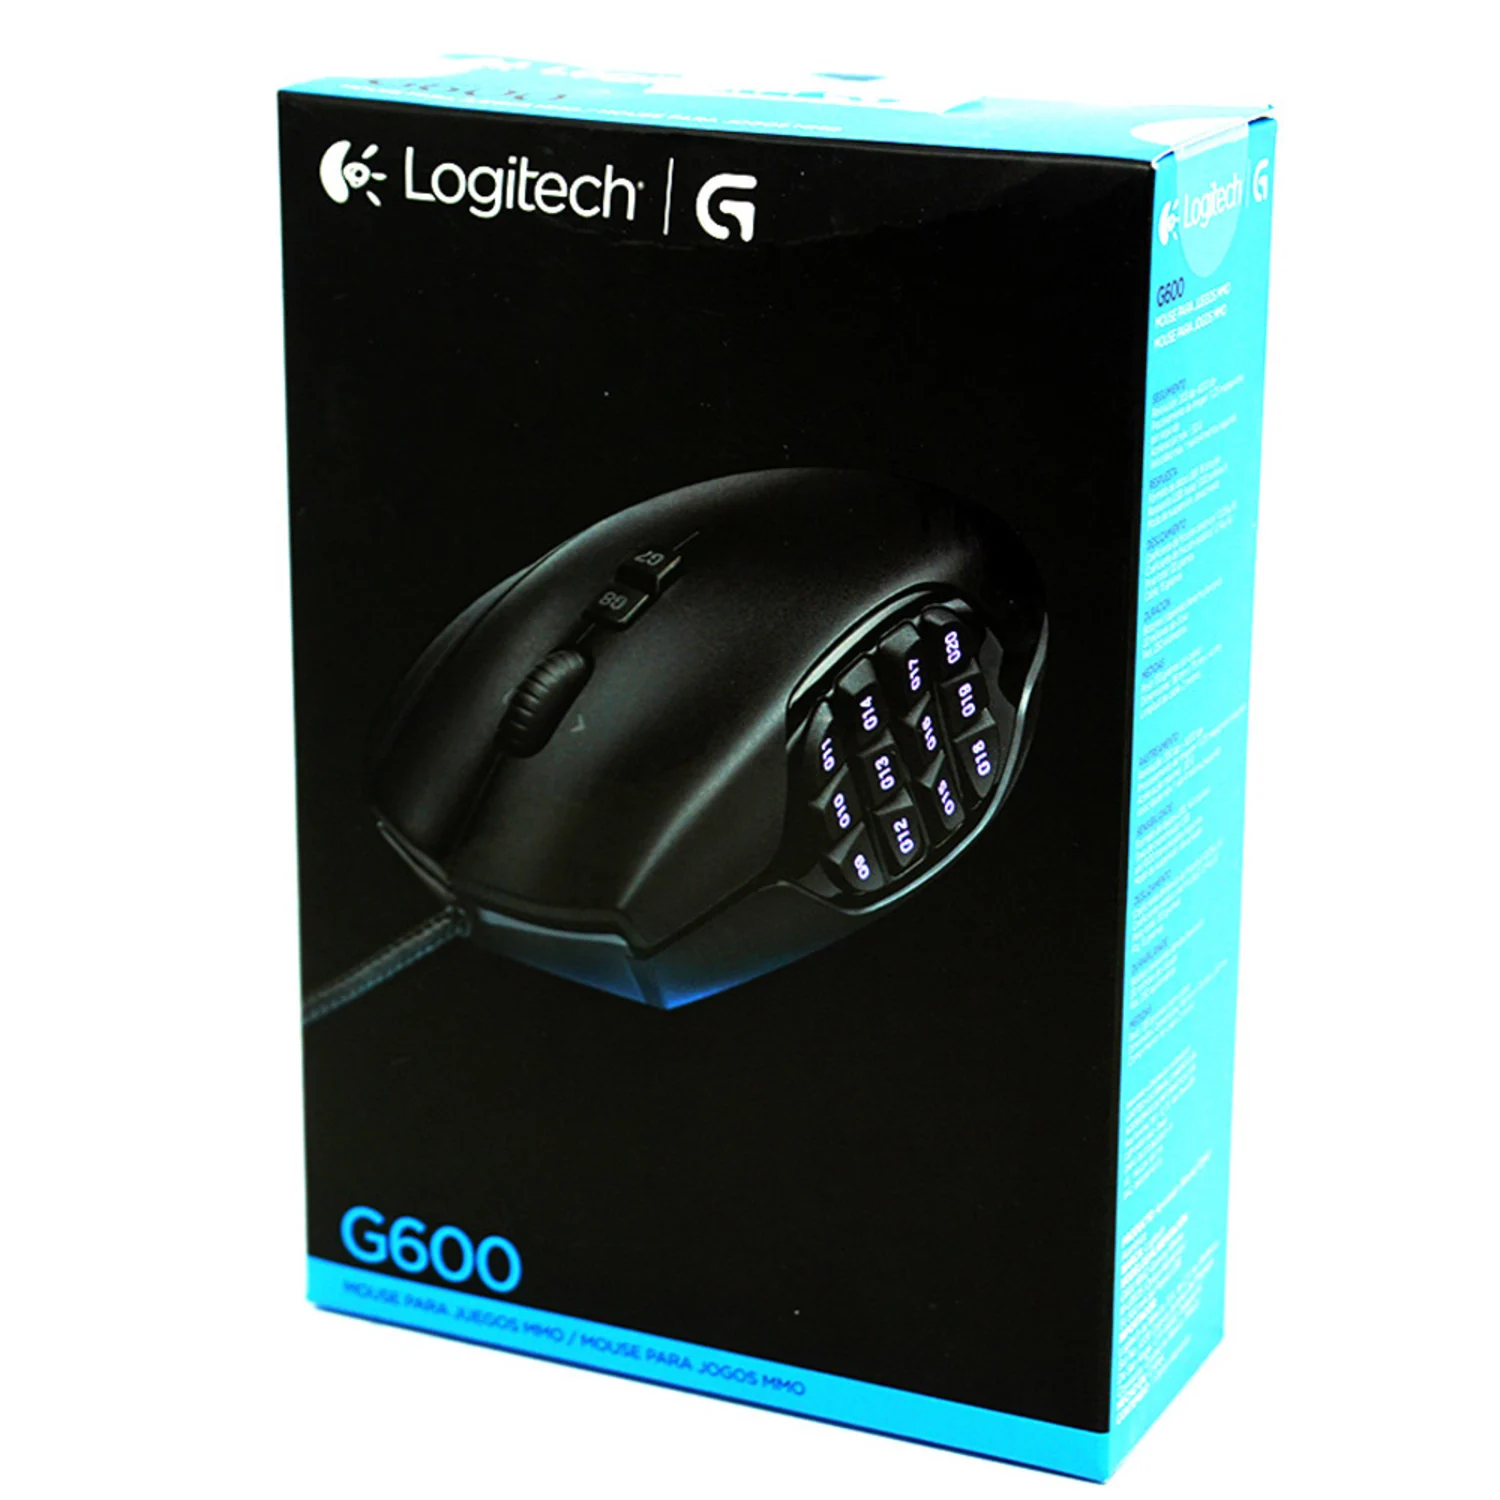 Mouse Gamer Logitech G600 - Preto (910-002864)